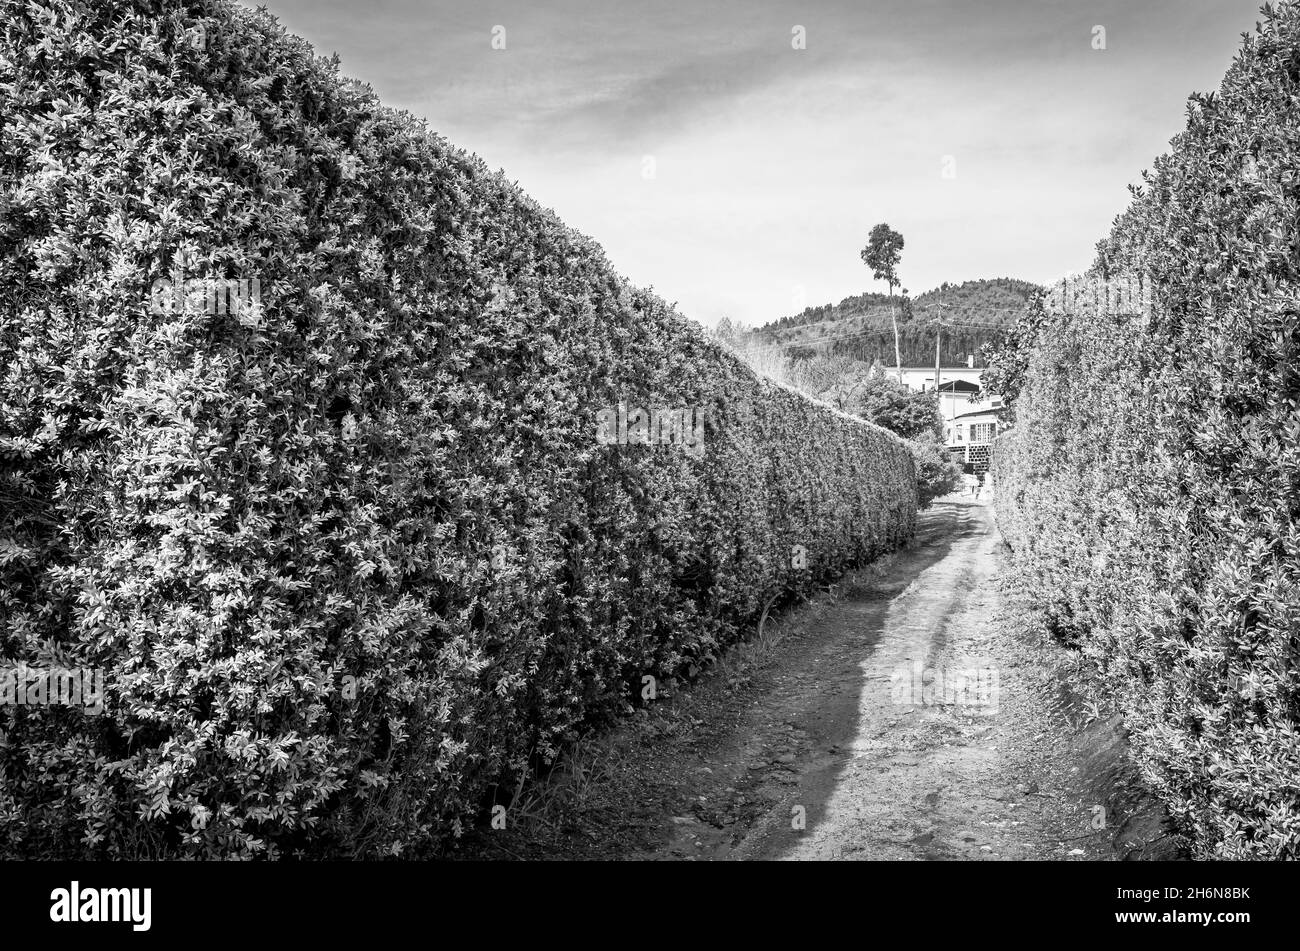 Plantation de vignes à raisins.Vignoble dans la zone rurale de Lisbonne, Portugal.Noir et blanc. Banque D'Images